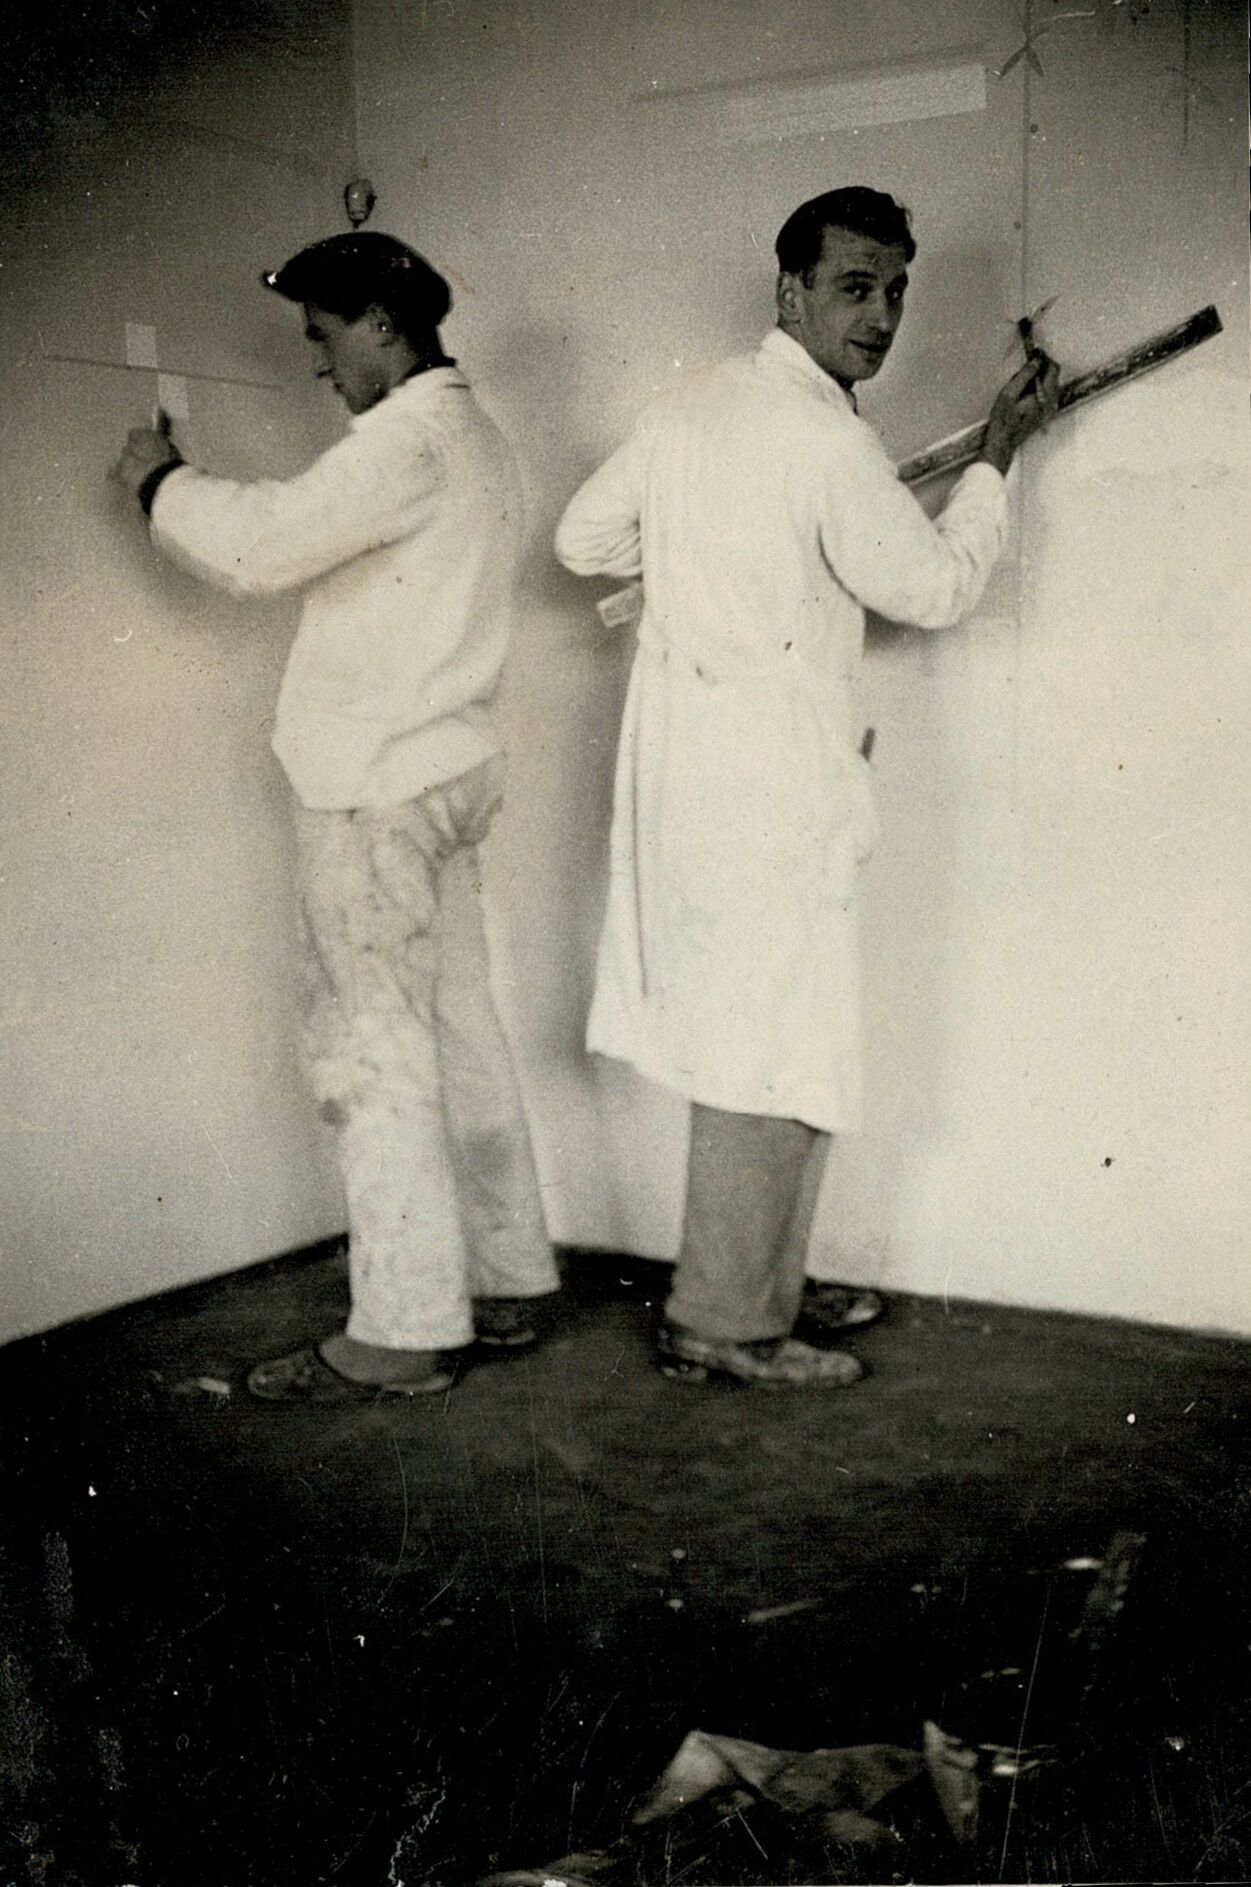 Rechts Helmut Rothe während der Wandgestaltung mit einem Arbeitskollegen